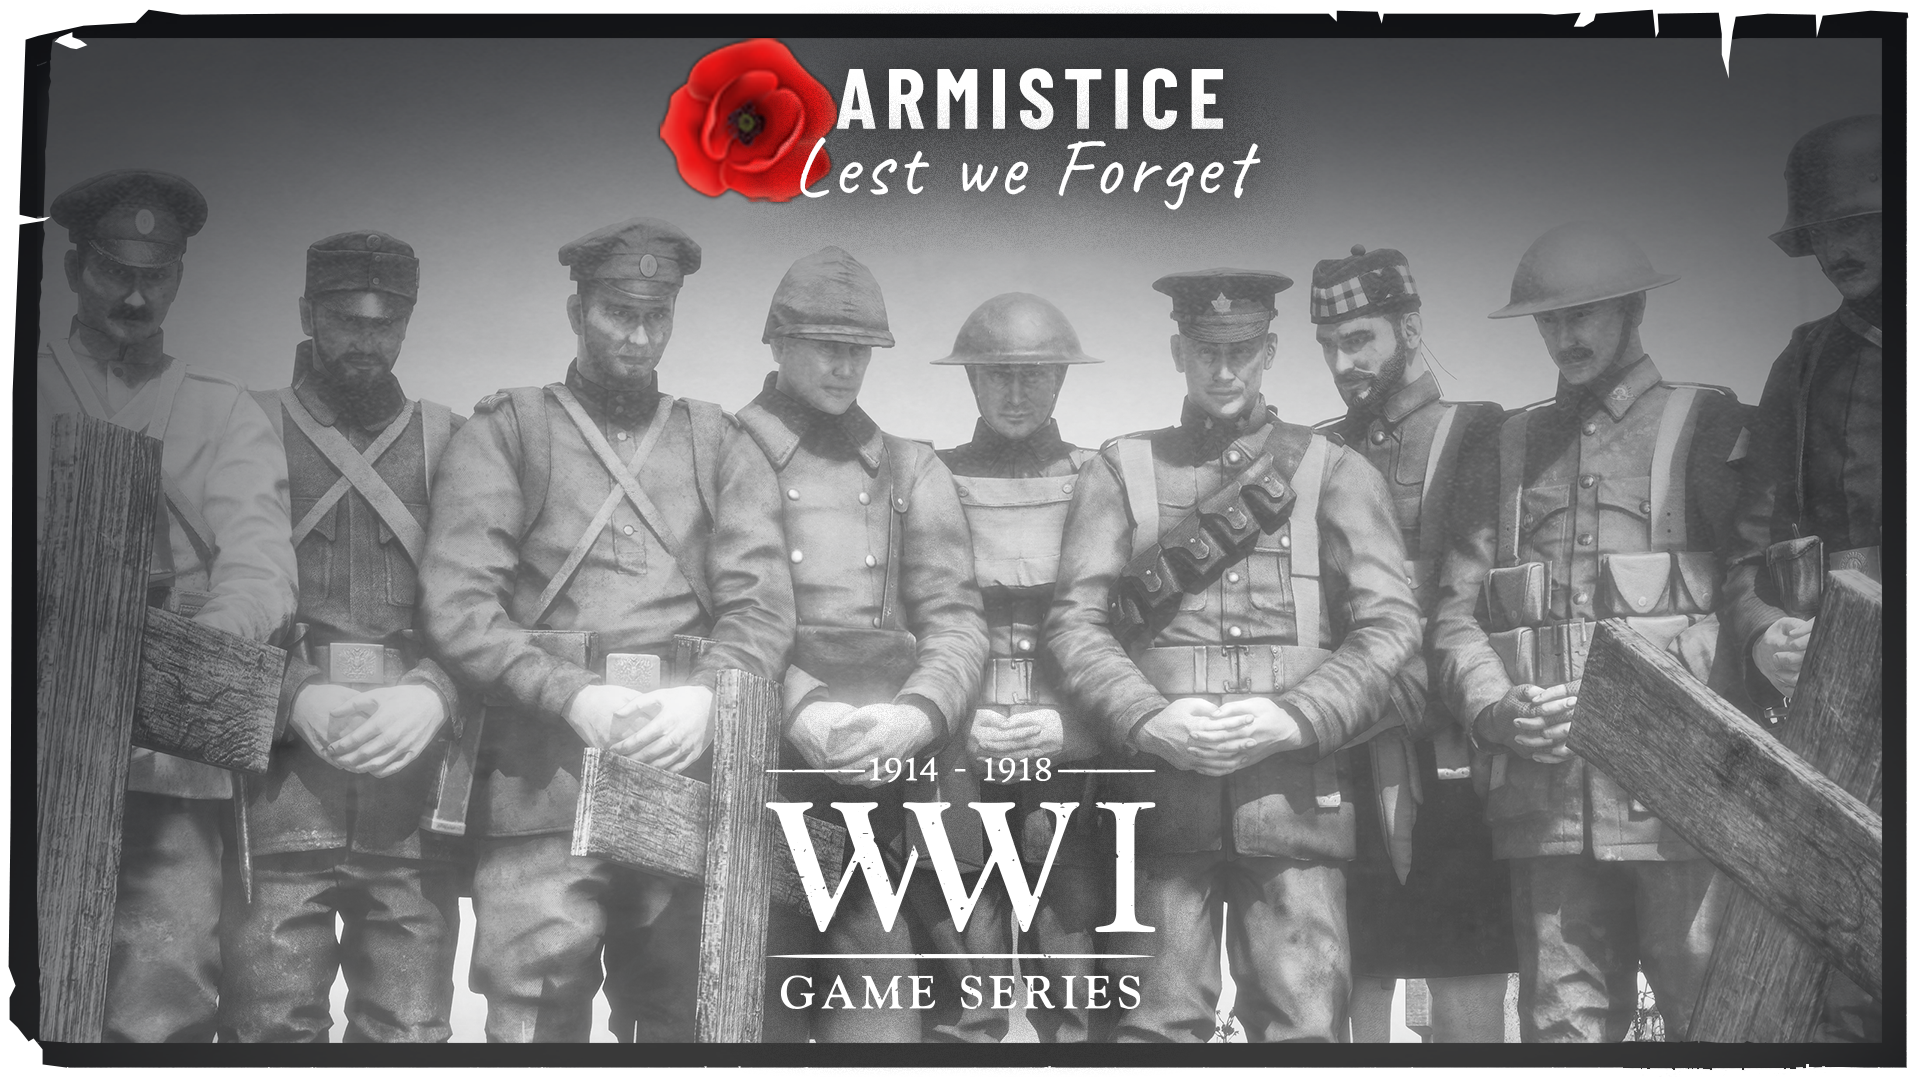 armistice poster artboard final